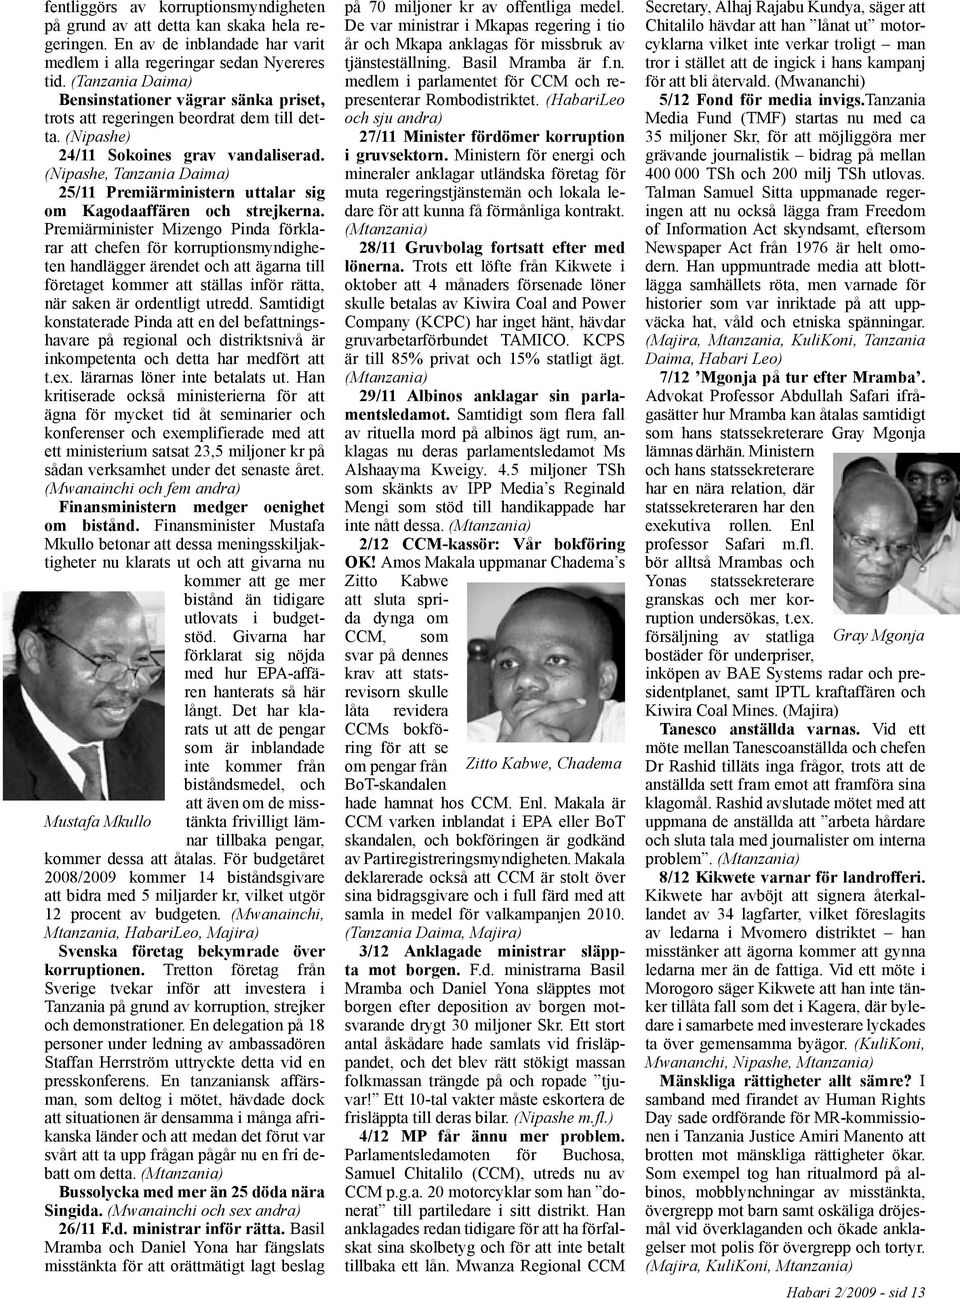 (Nipashe, Tanzania Daima) 25/11 Premiärministern uttalar sig om Kagodaaffären och strejkerna.